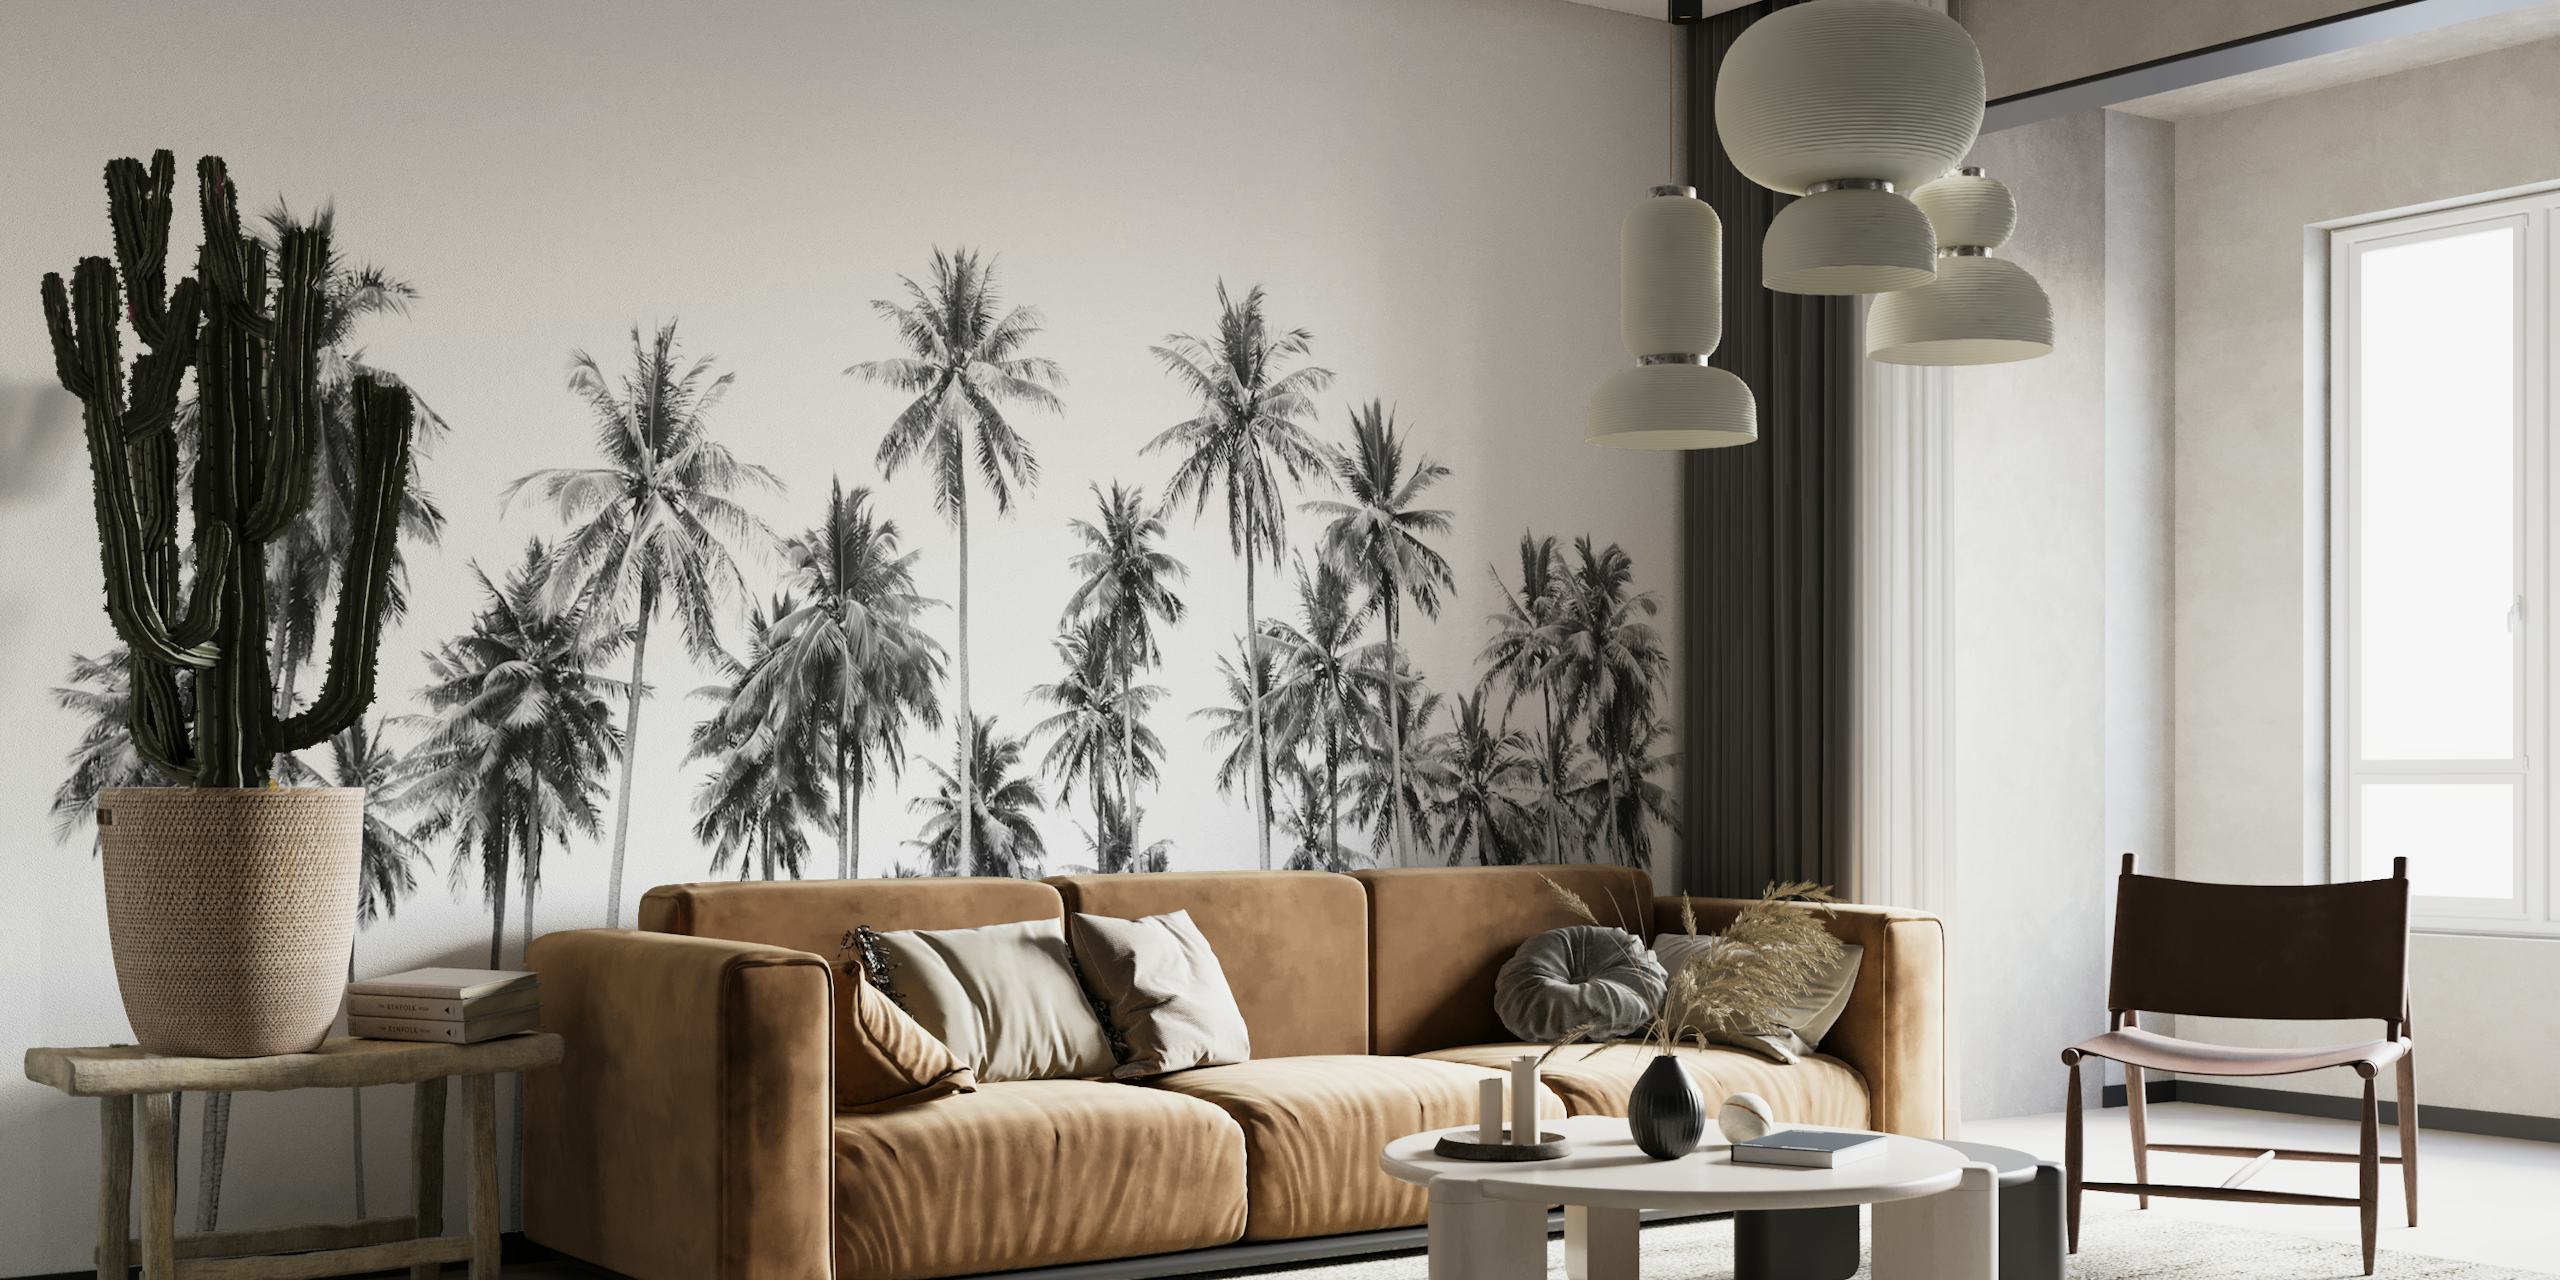 Sort og hvidt vægmaleri af høje palmer i jungle omgivelser